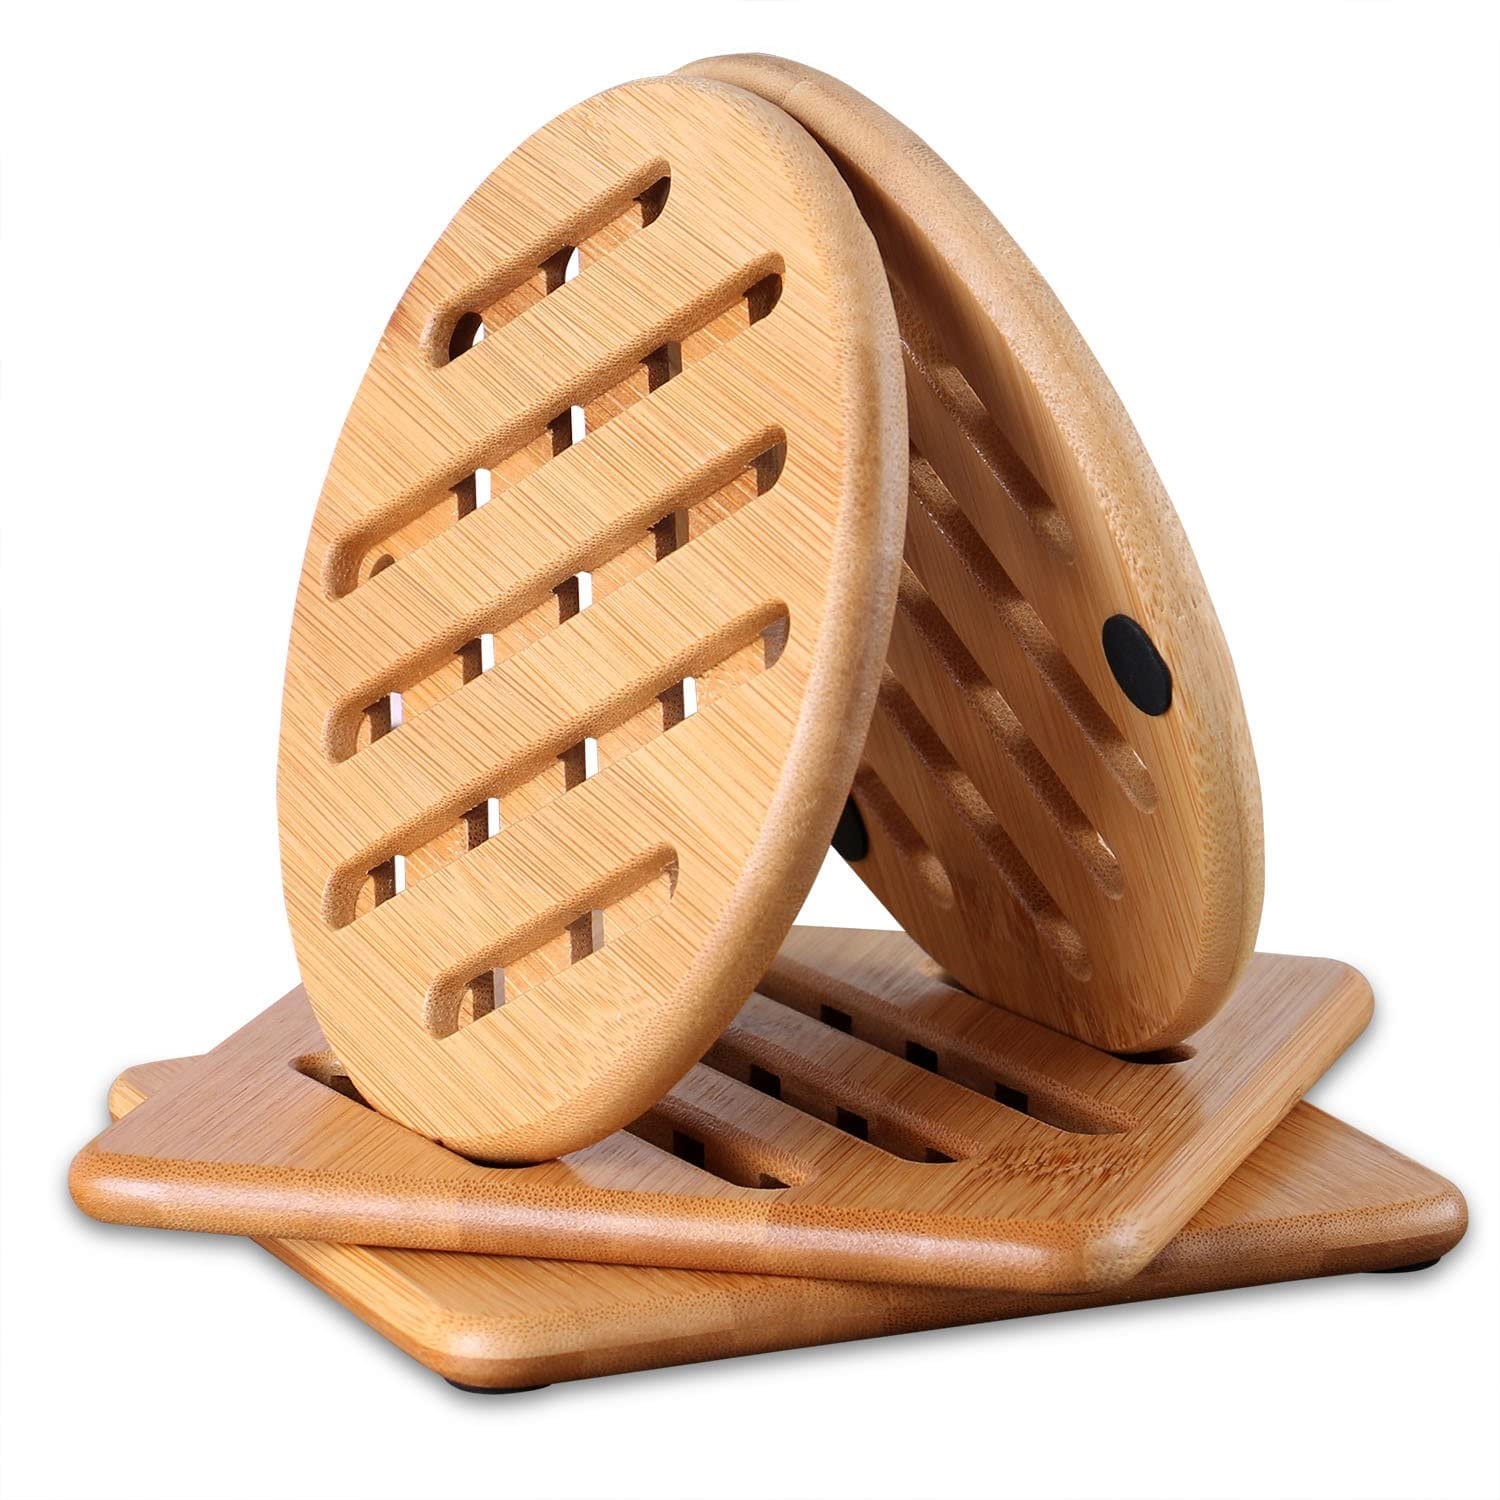 2 Bamboo Hot Pad Wood Trivet Mat Pot Pan Holder Heat Resistant Coaster Placemat